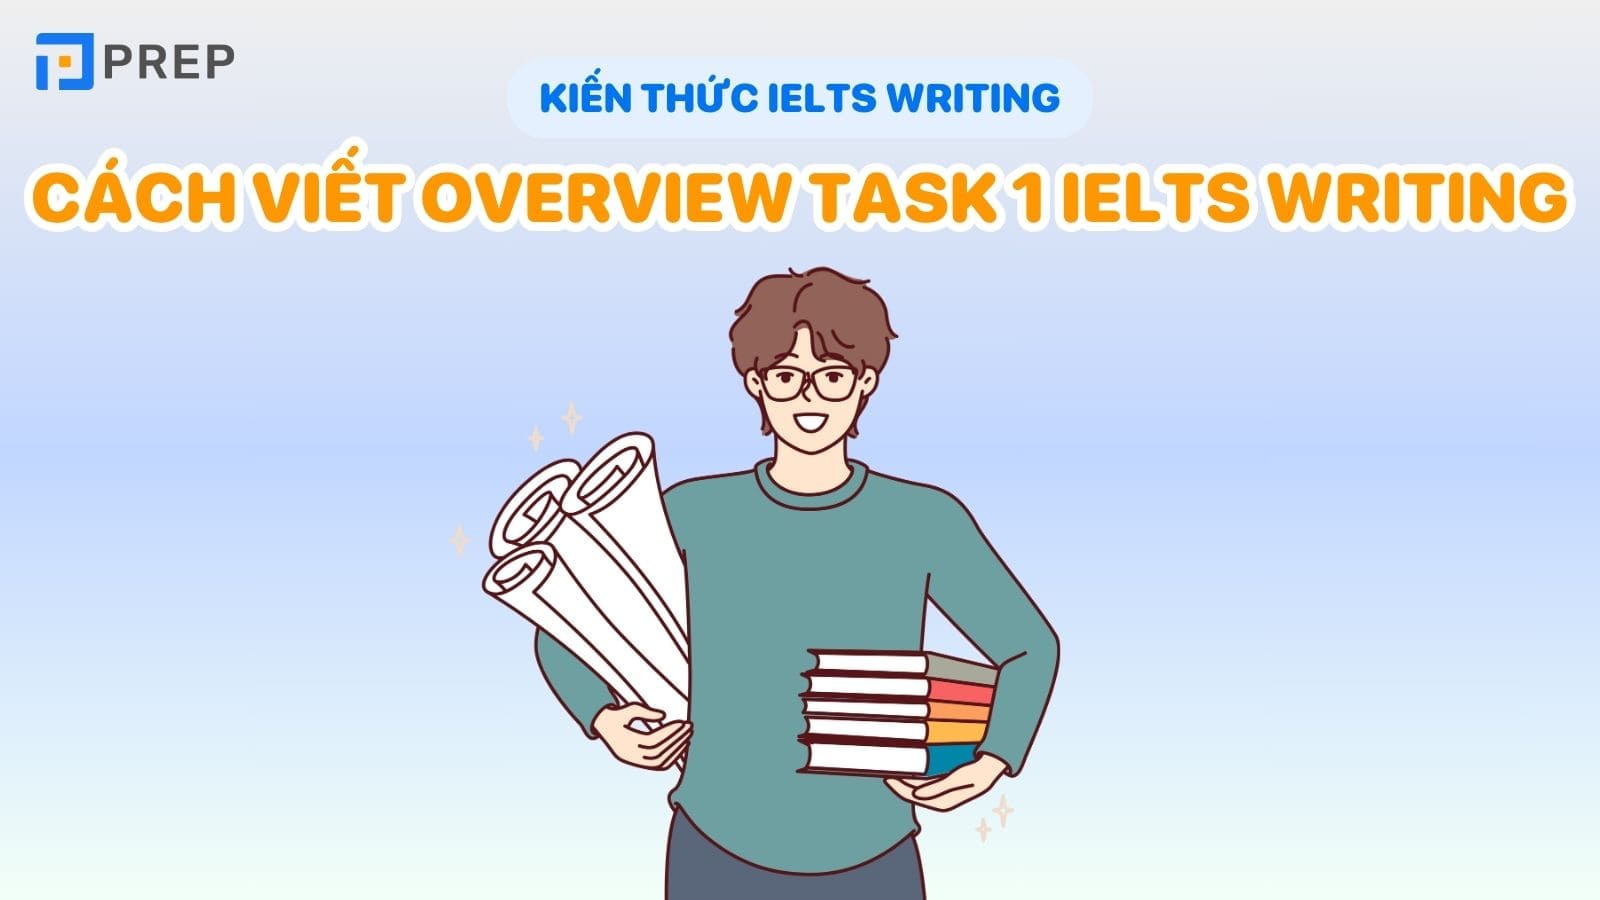 cach-viet-overview-task-1-ielts-writing.jpg